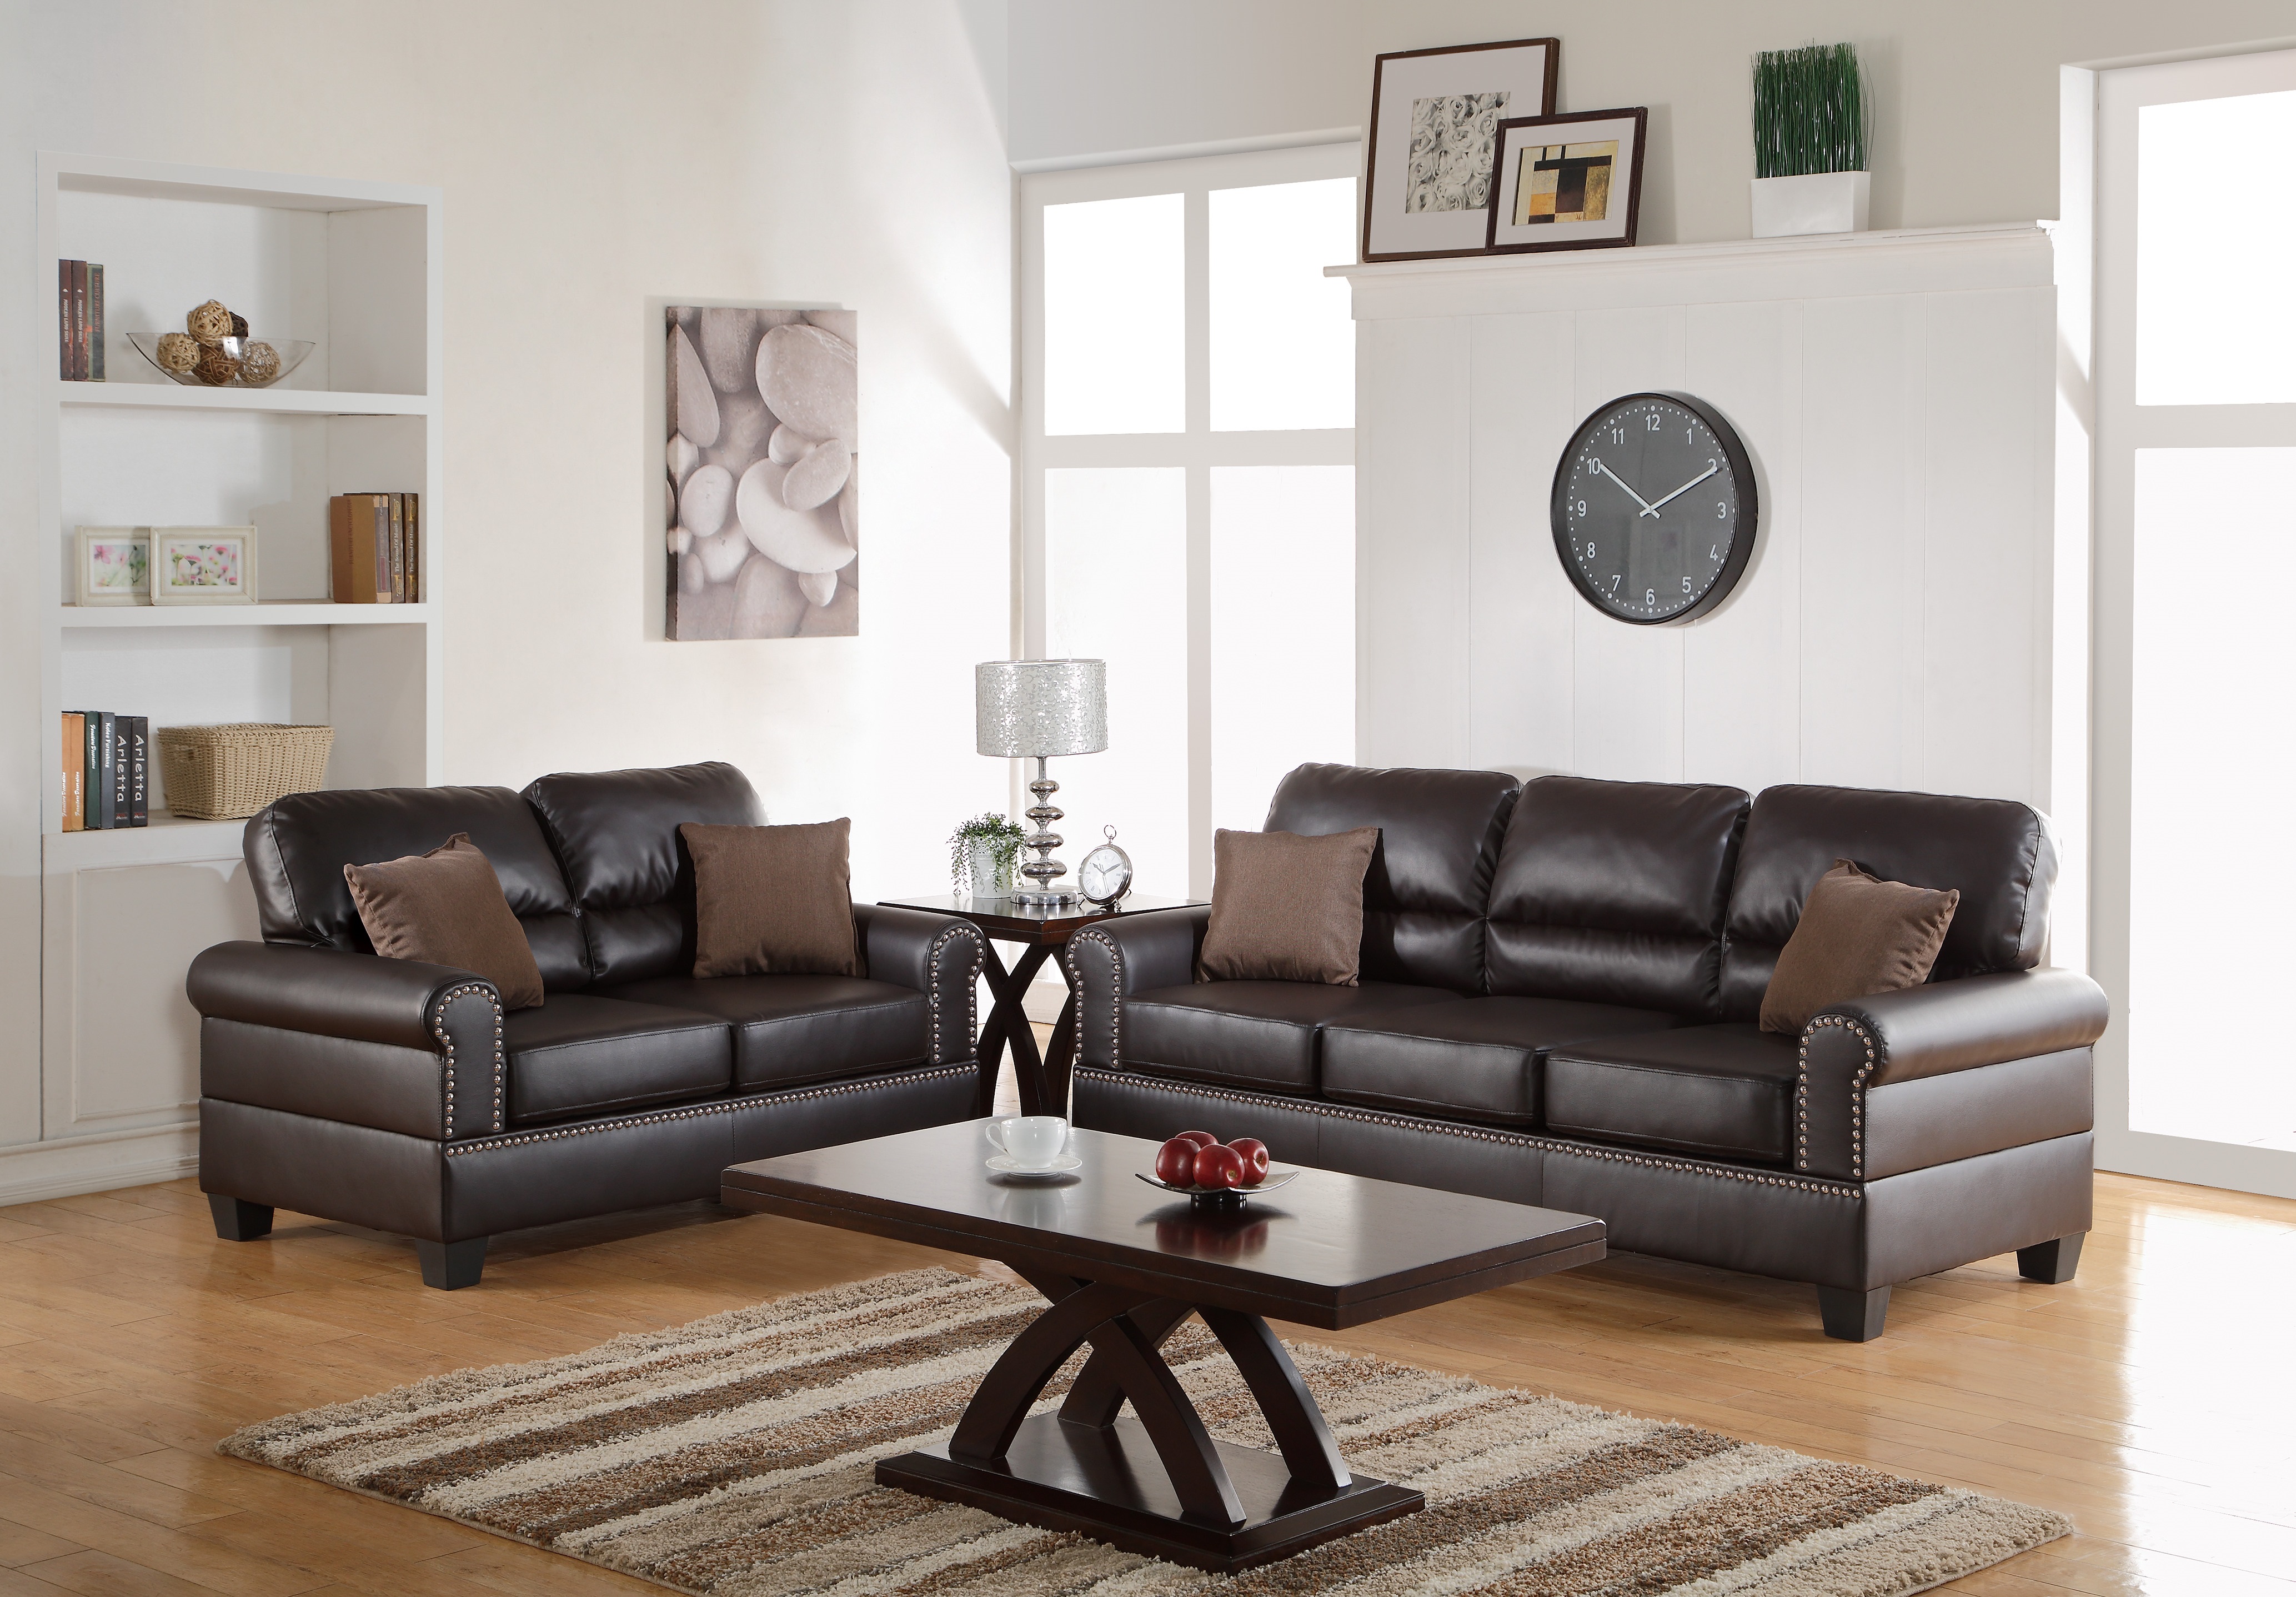 Esofa Living Room Furniture Sofa, Faux Leather Living Room Furniture